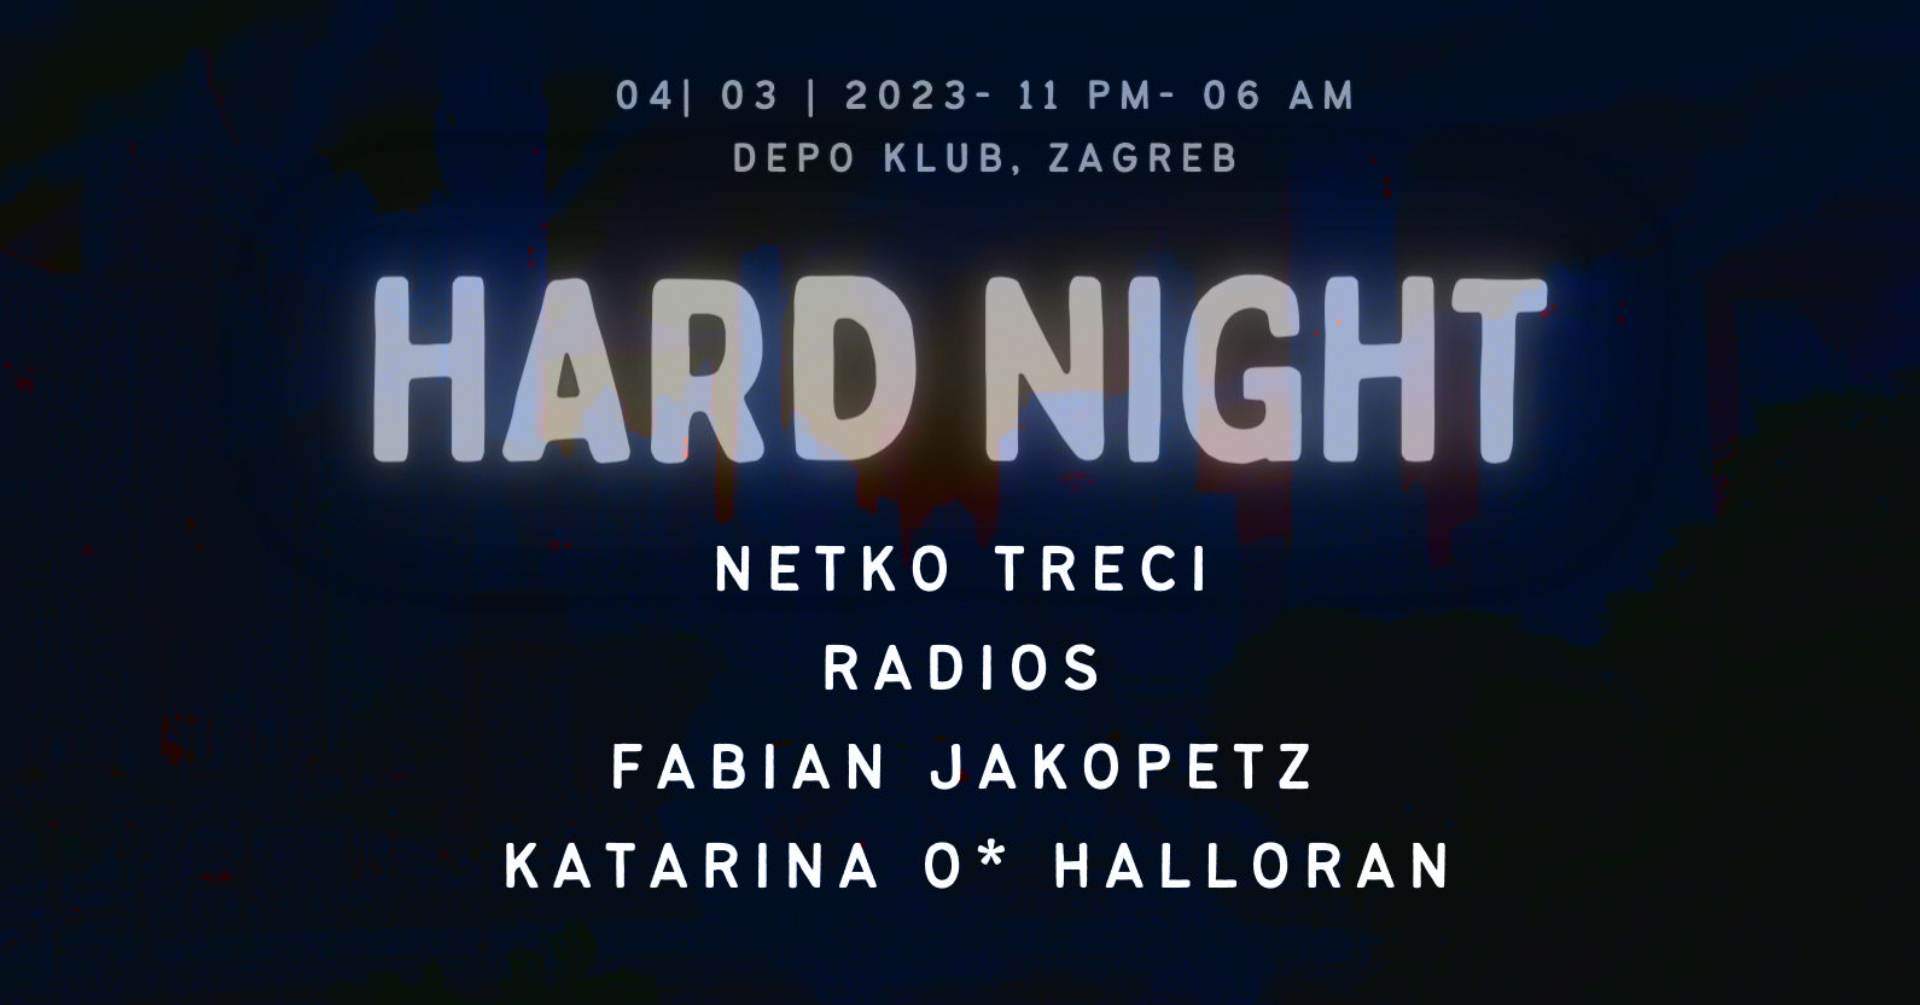 HARD NIGHT at DEPOklub - フライヤー表